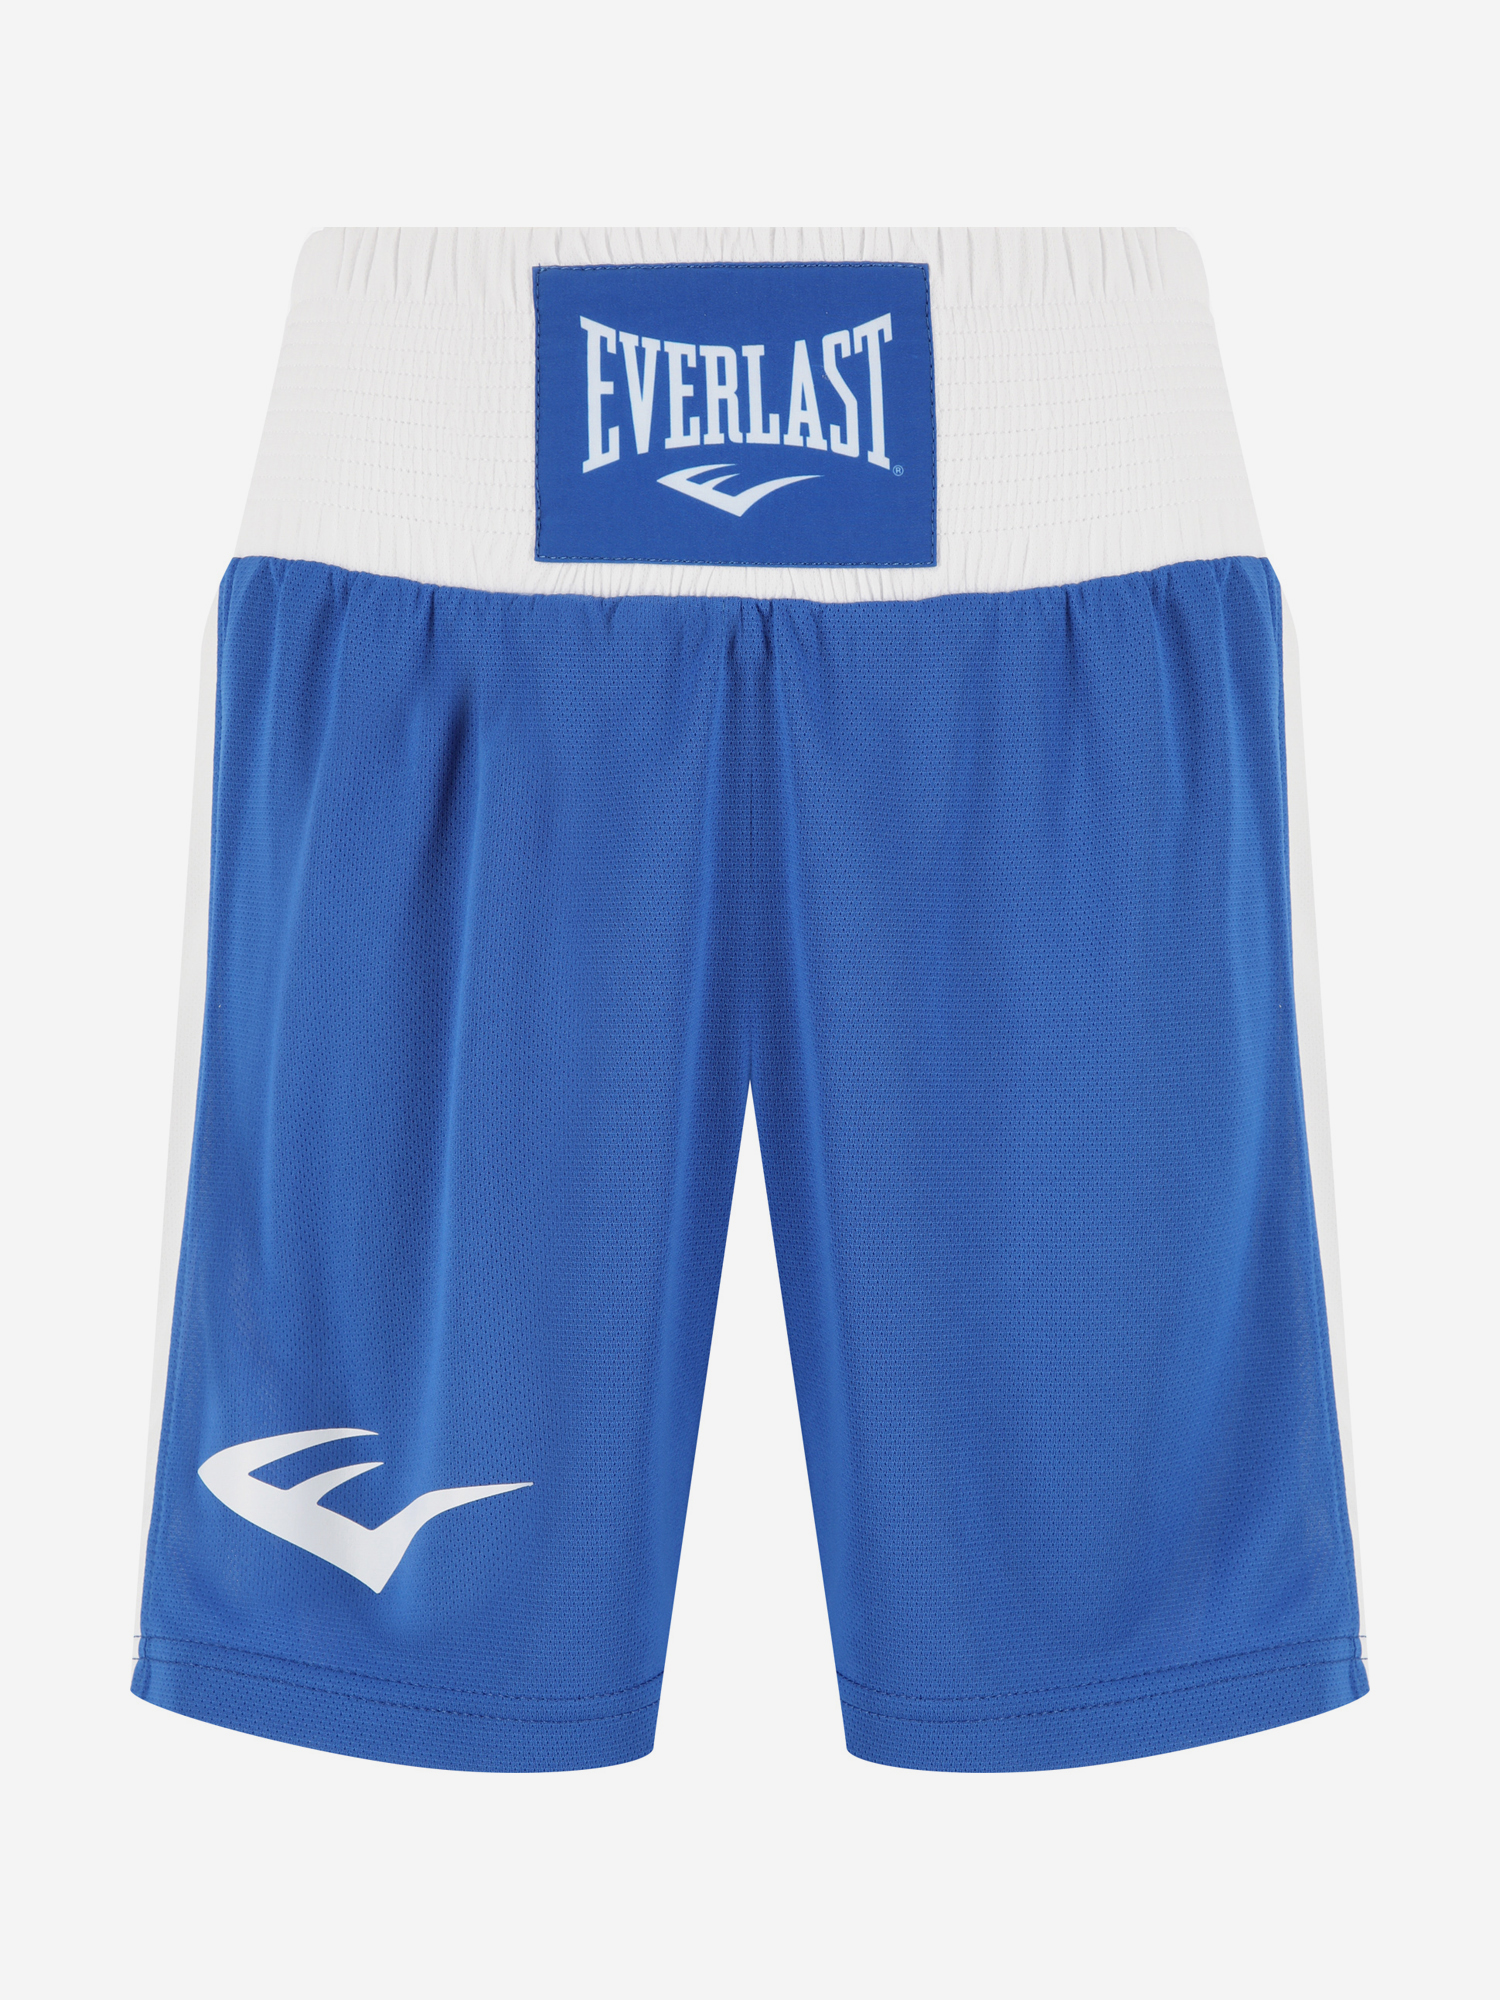 Шорты для бокса Everlast Shorts Elite, Синий шапка everlast wagner light серый